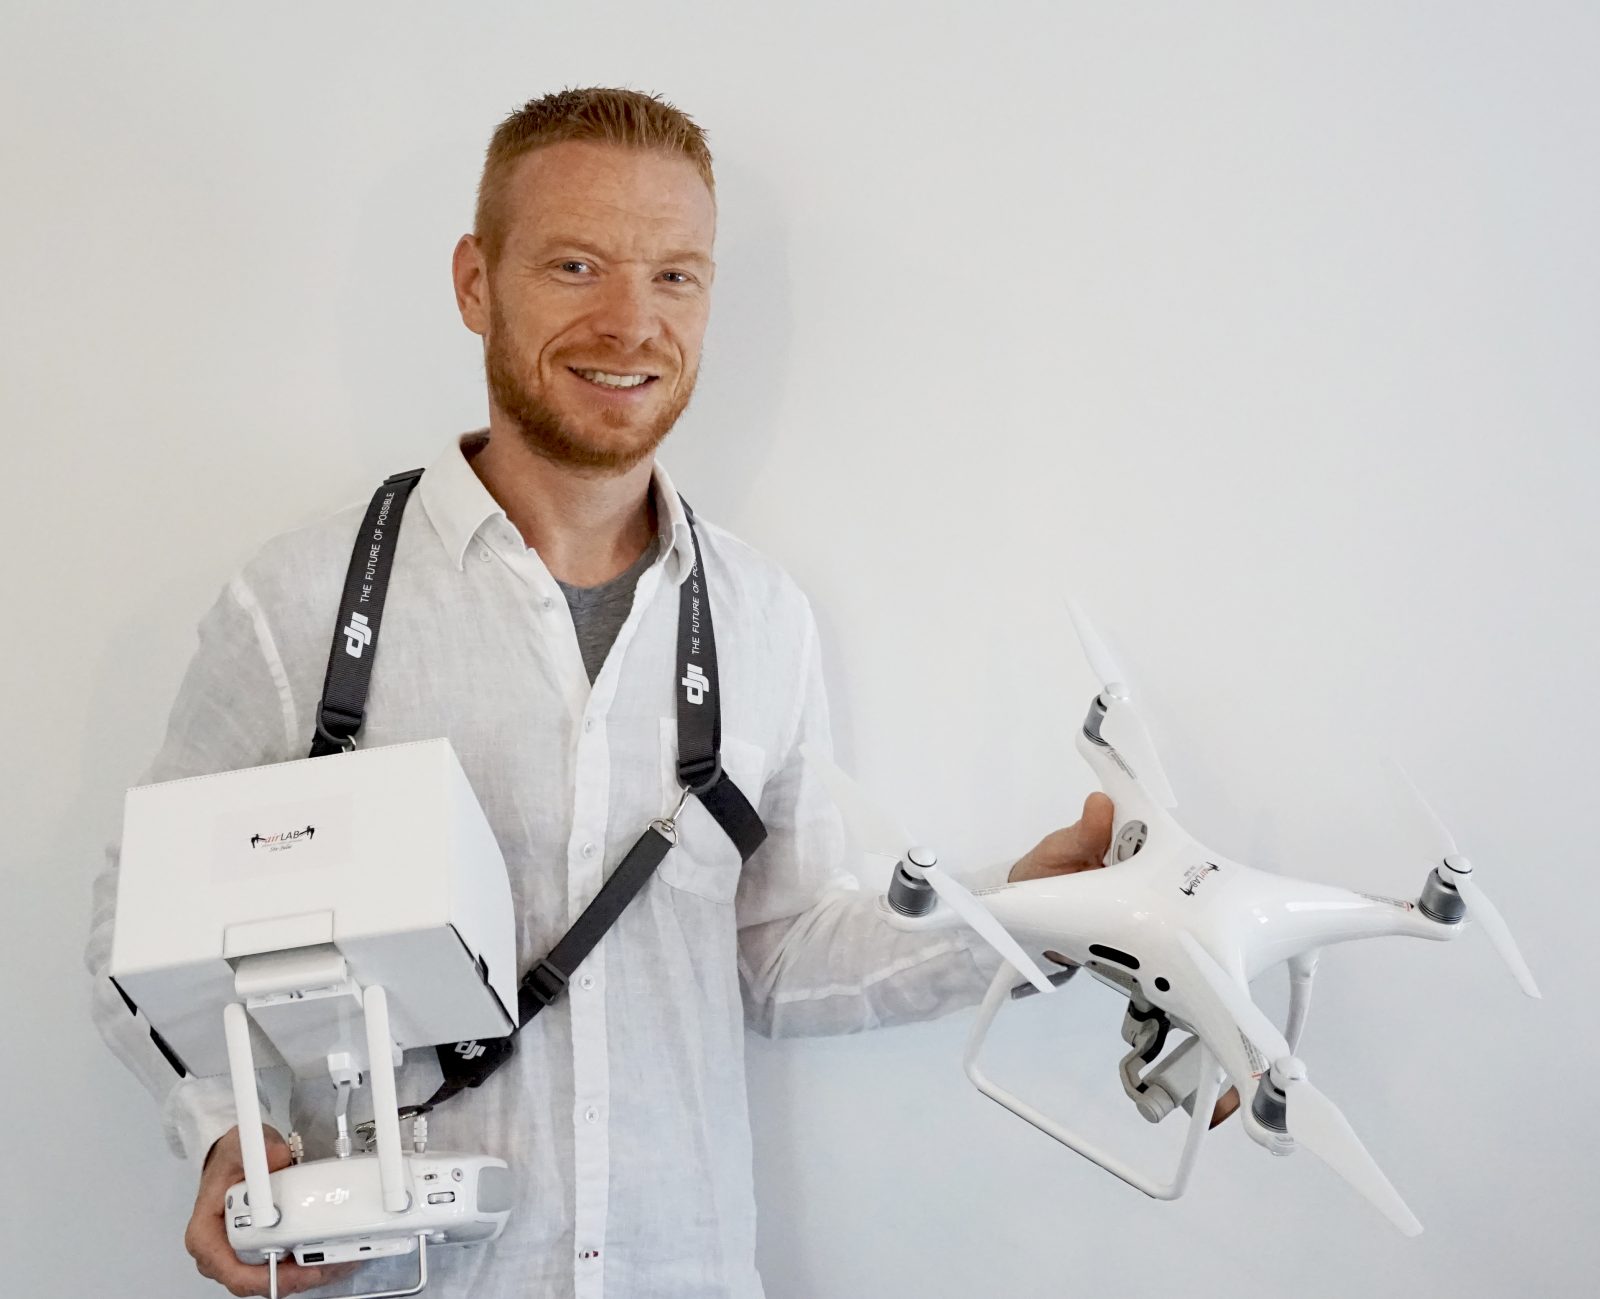 Le drone au service des professionnels et des particuliers